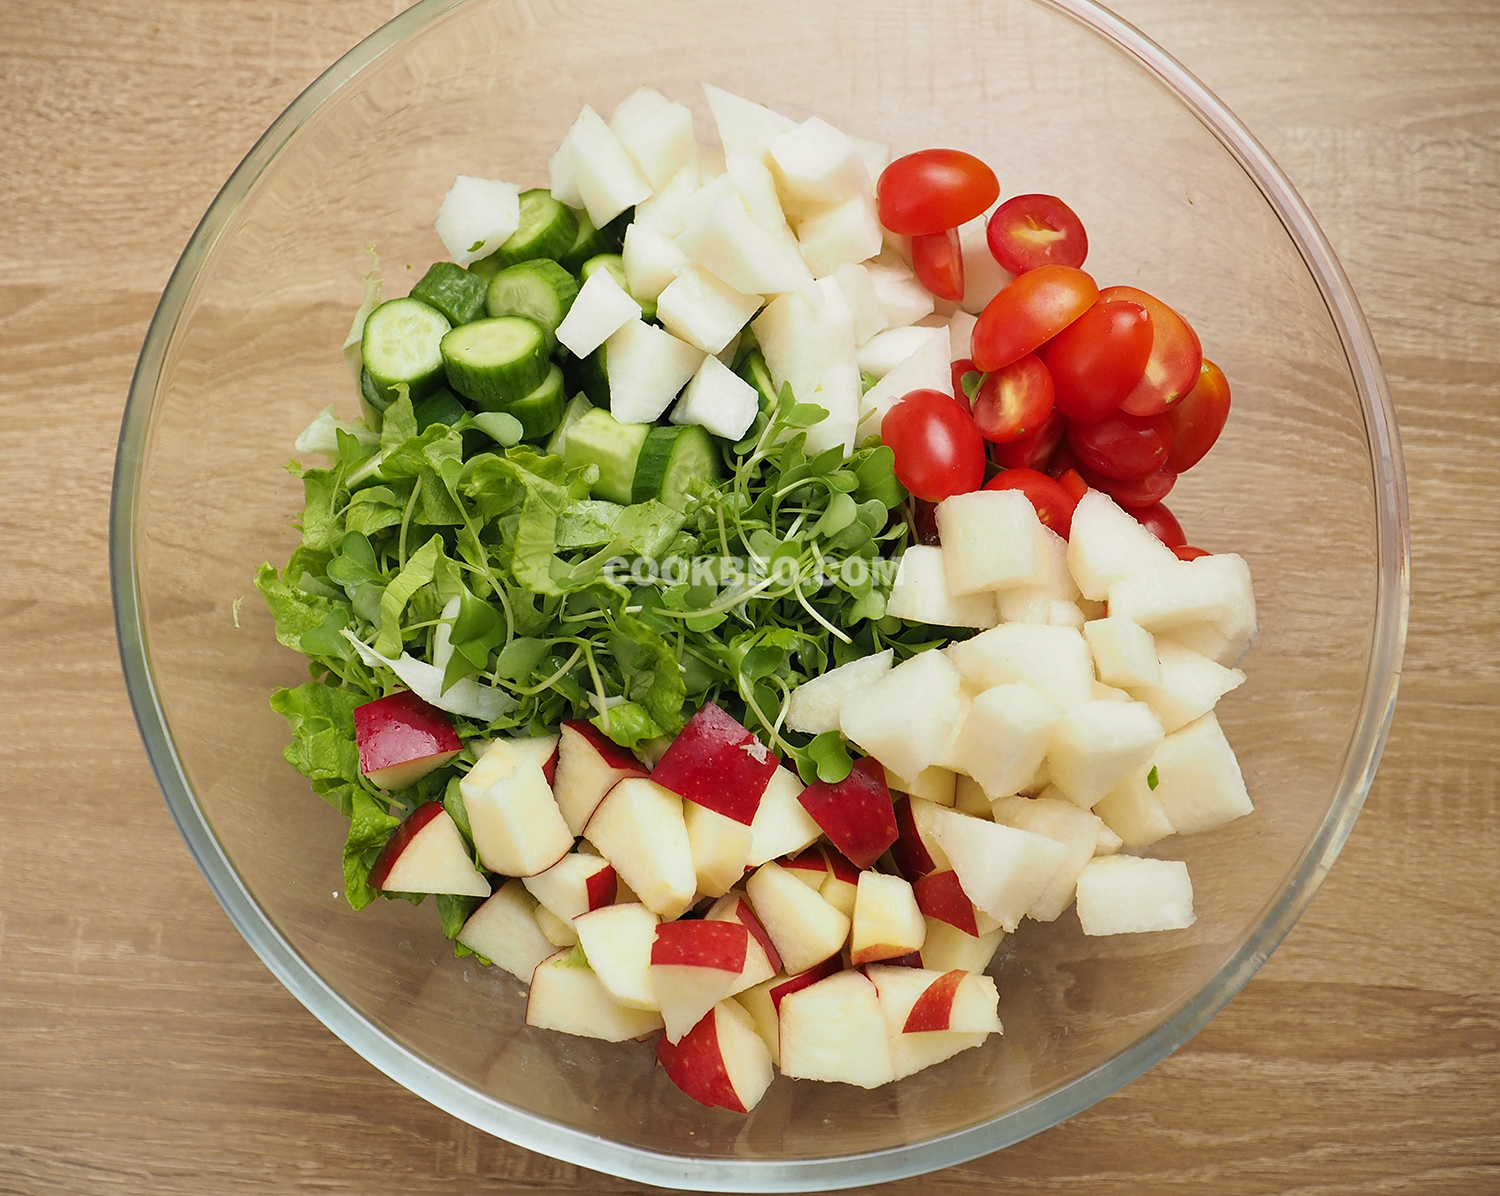 Sơ chế các nguyên liệu để làm salad rau mầm